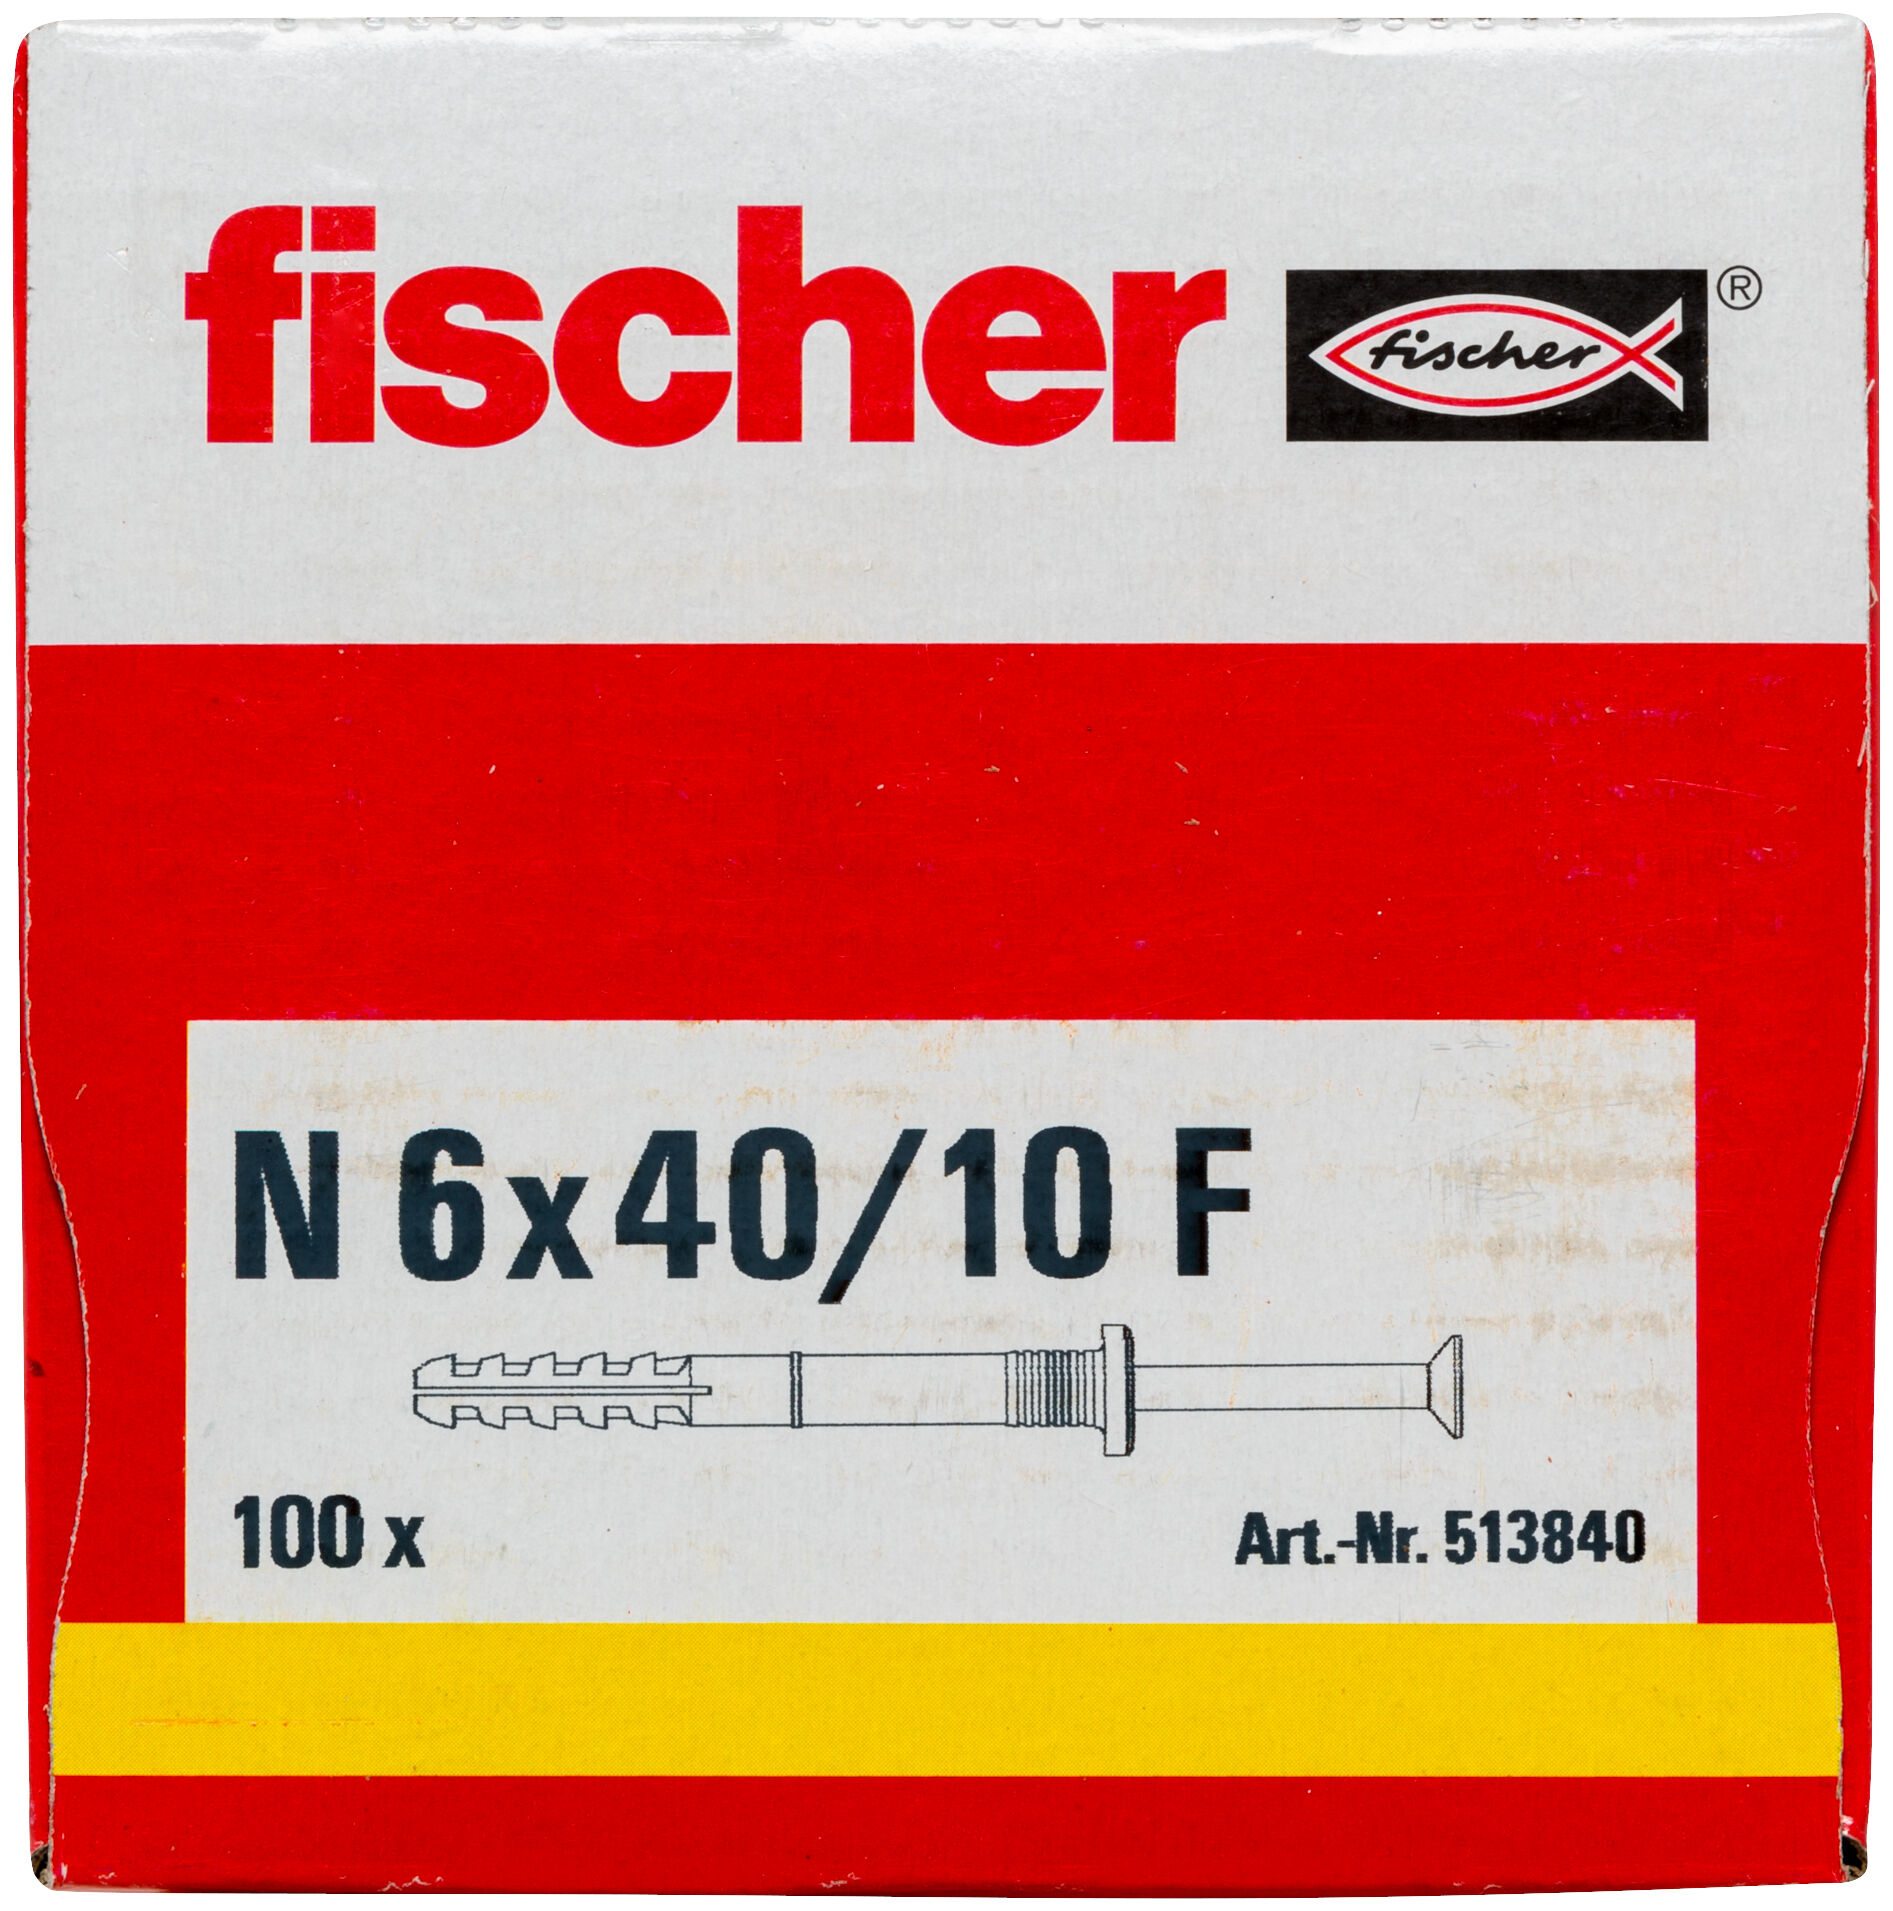 Av216-Fischertechnik ® Description 100/100 S/ 